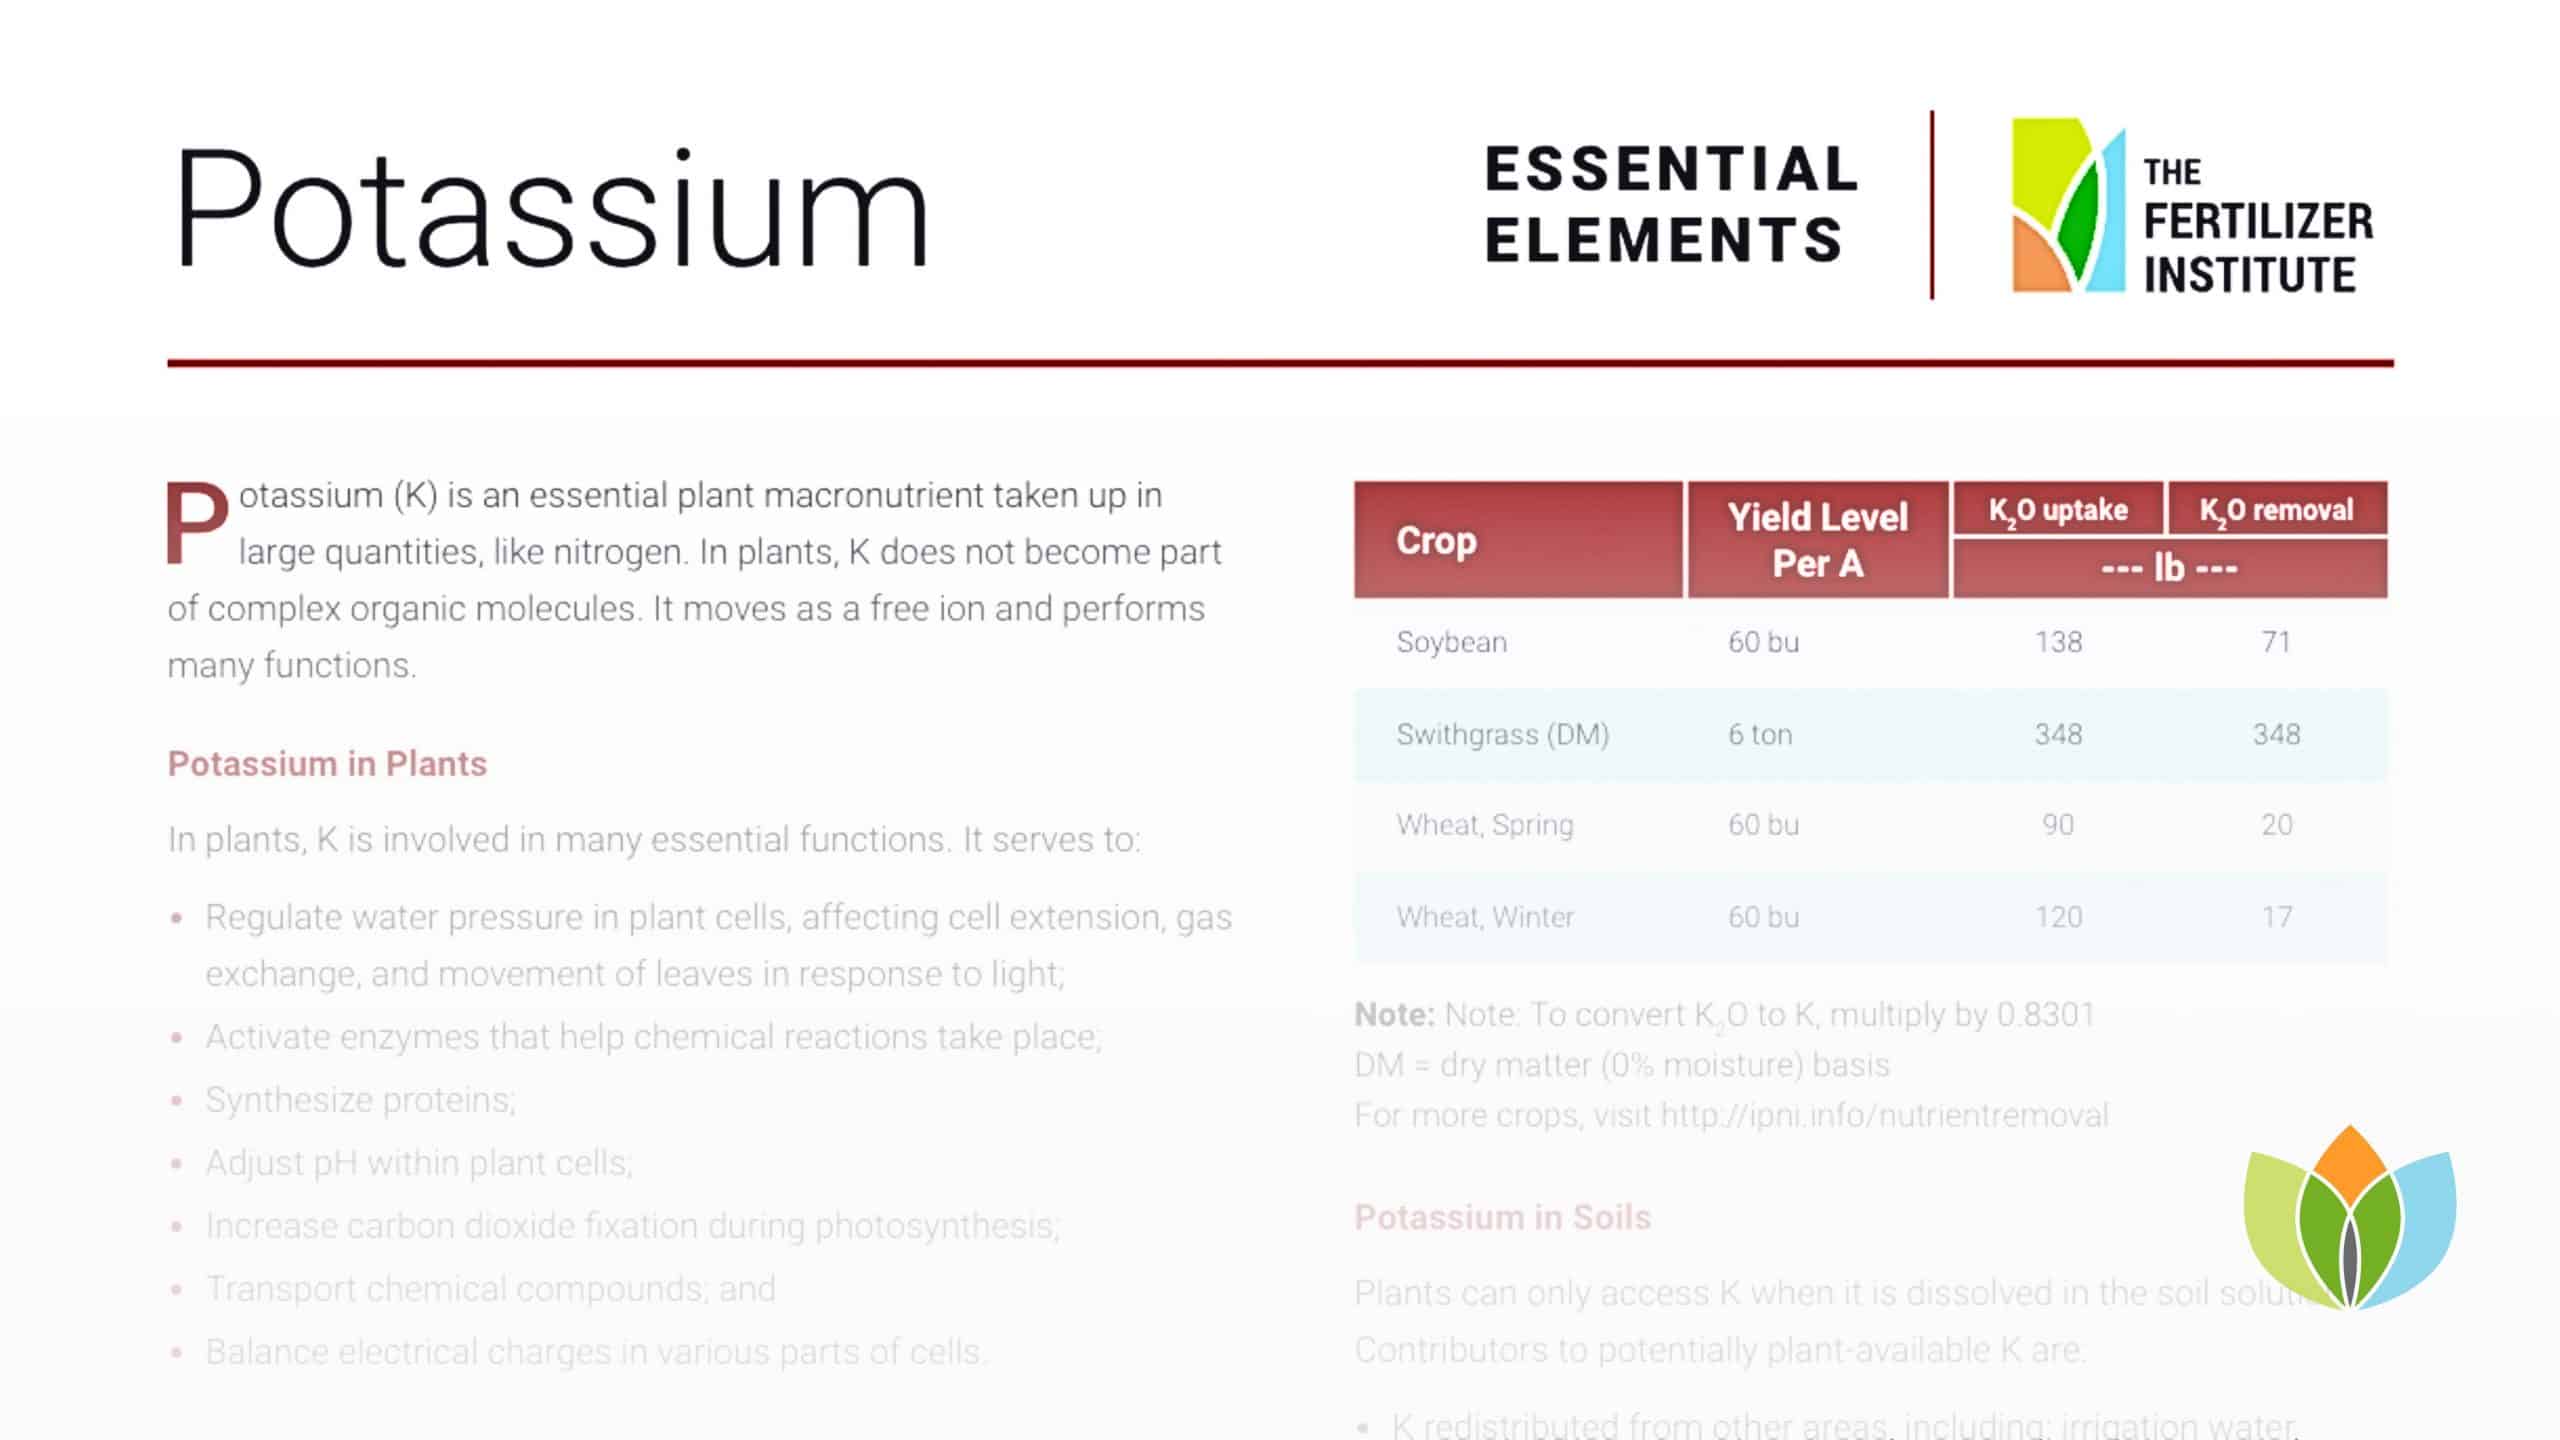 Essential Elements: Potassium